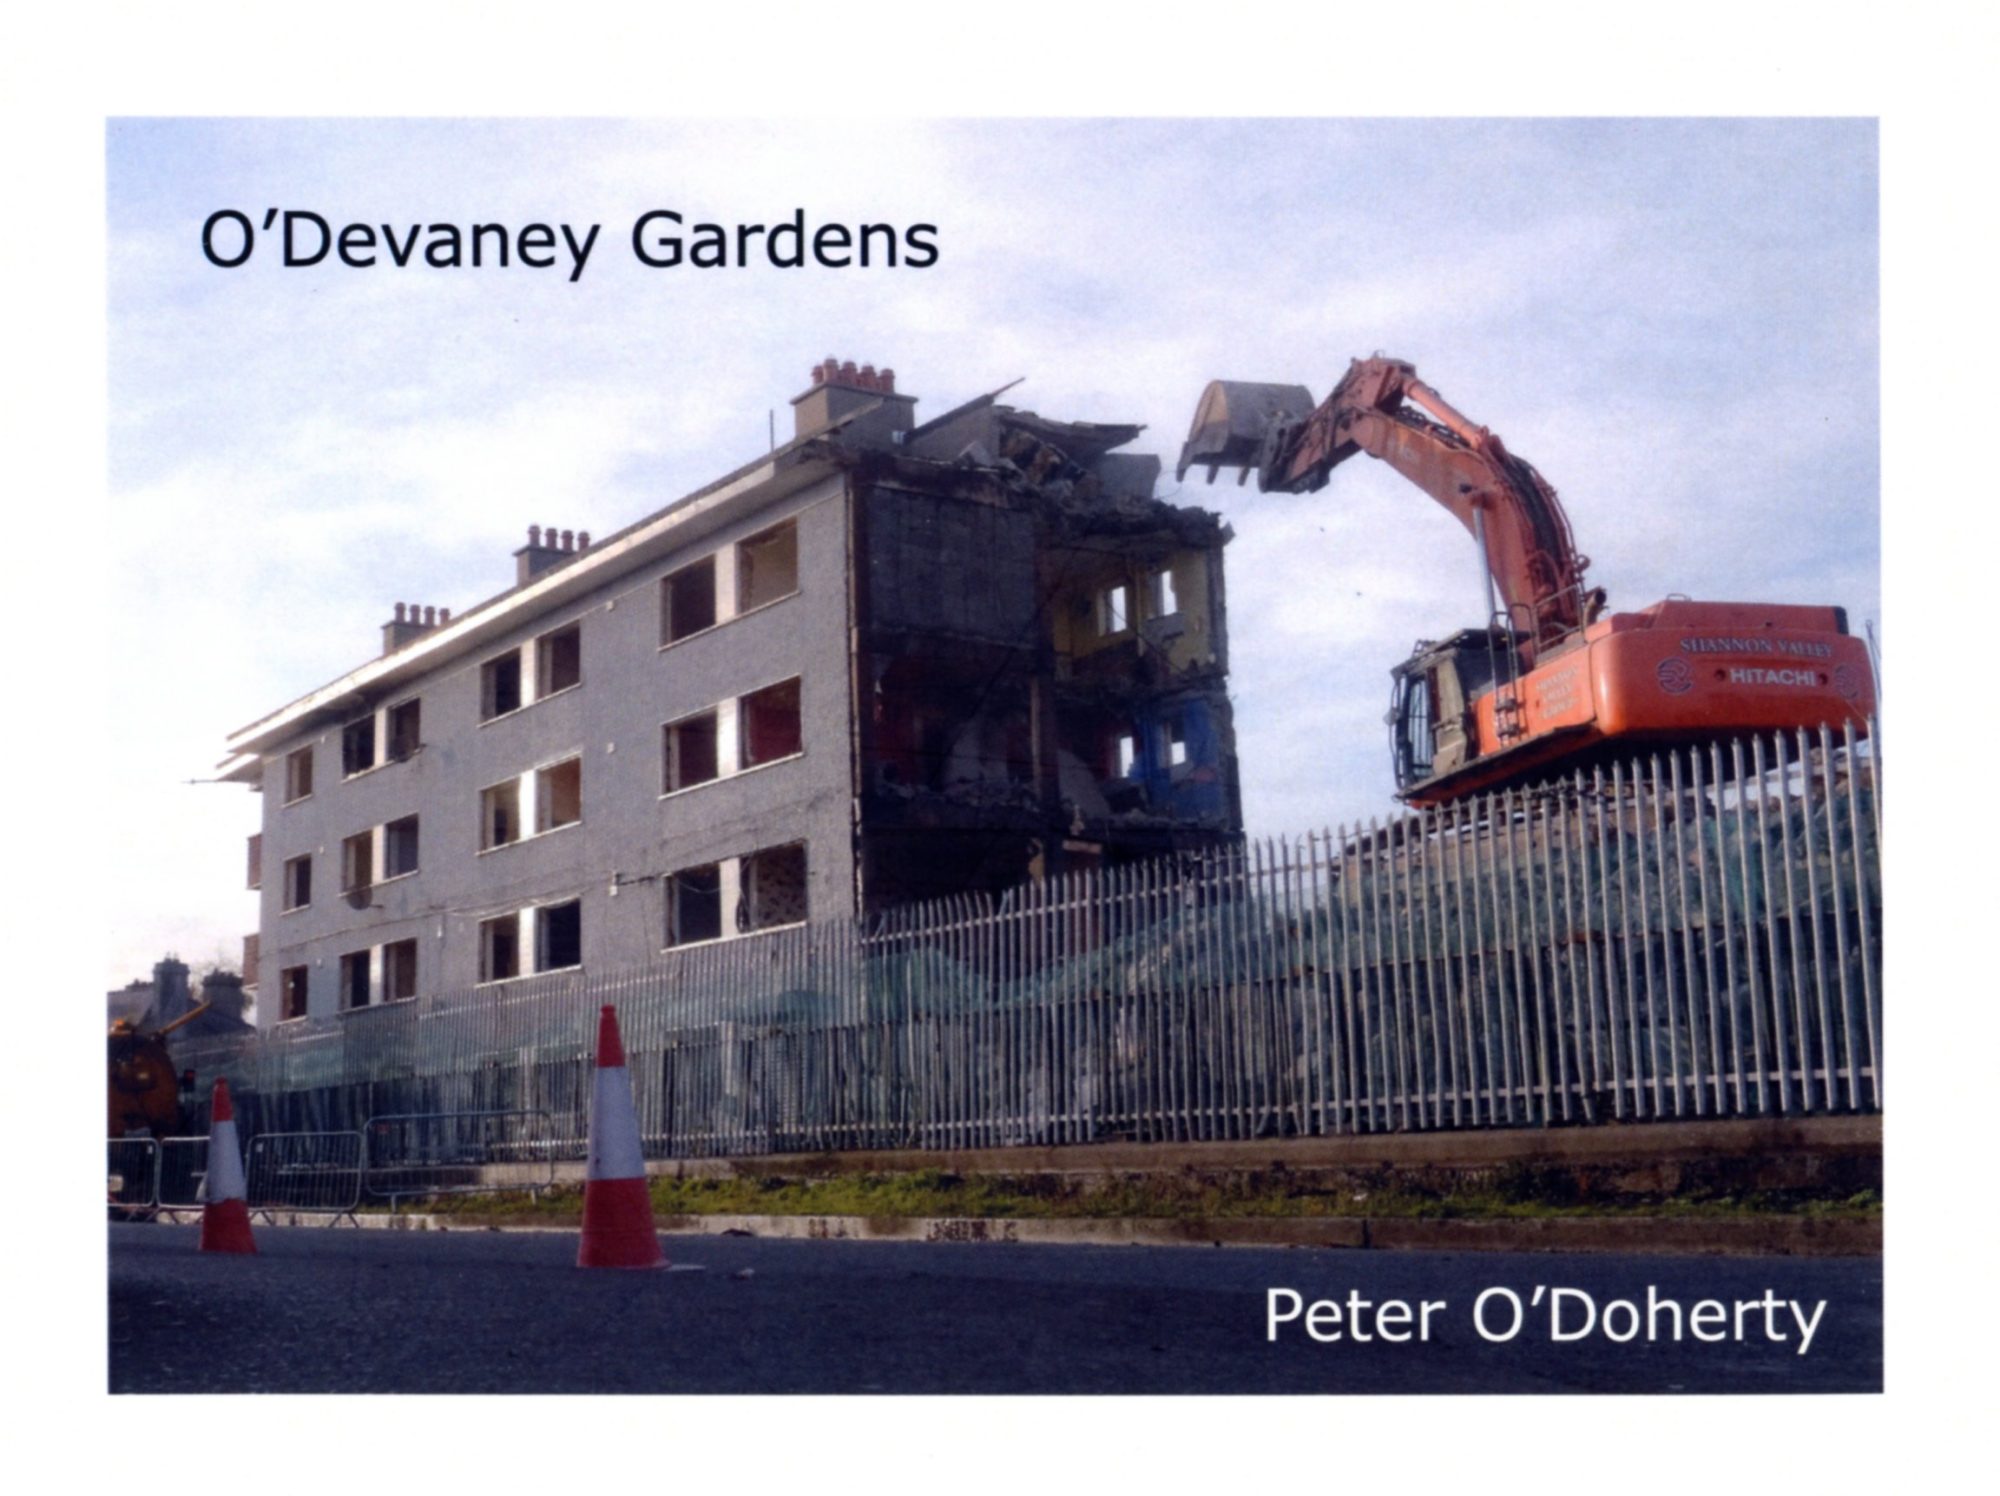 O’Devaney Gardens, Peter O’Doherty